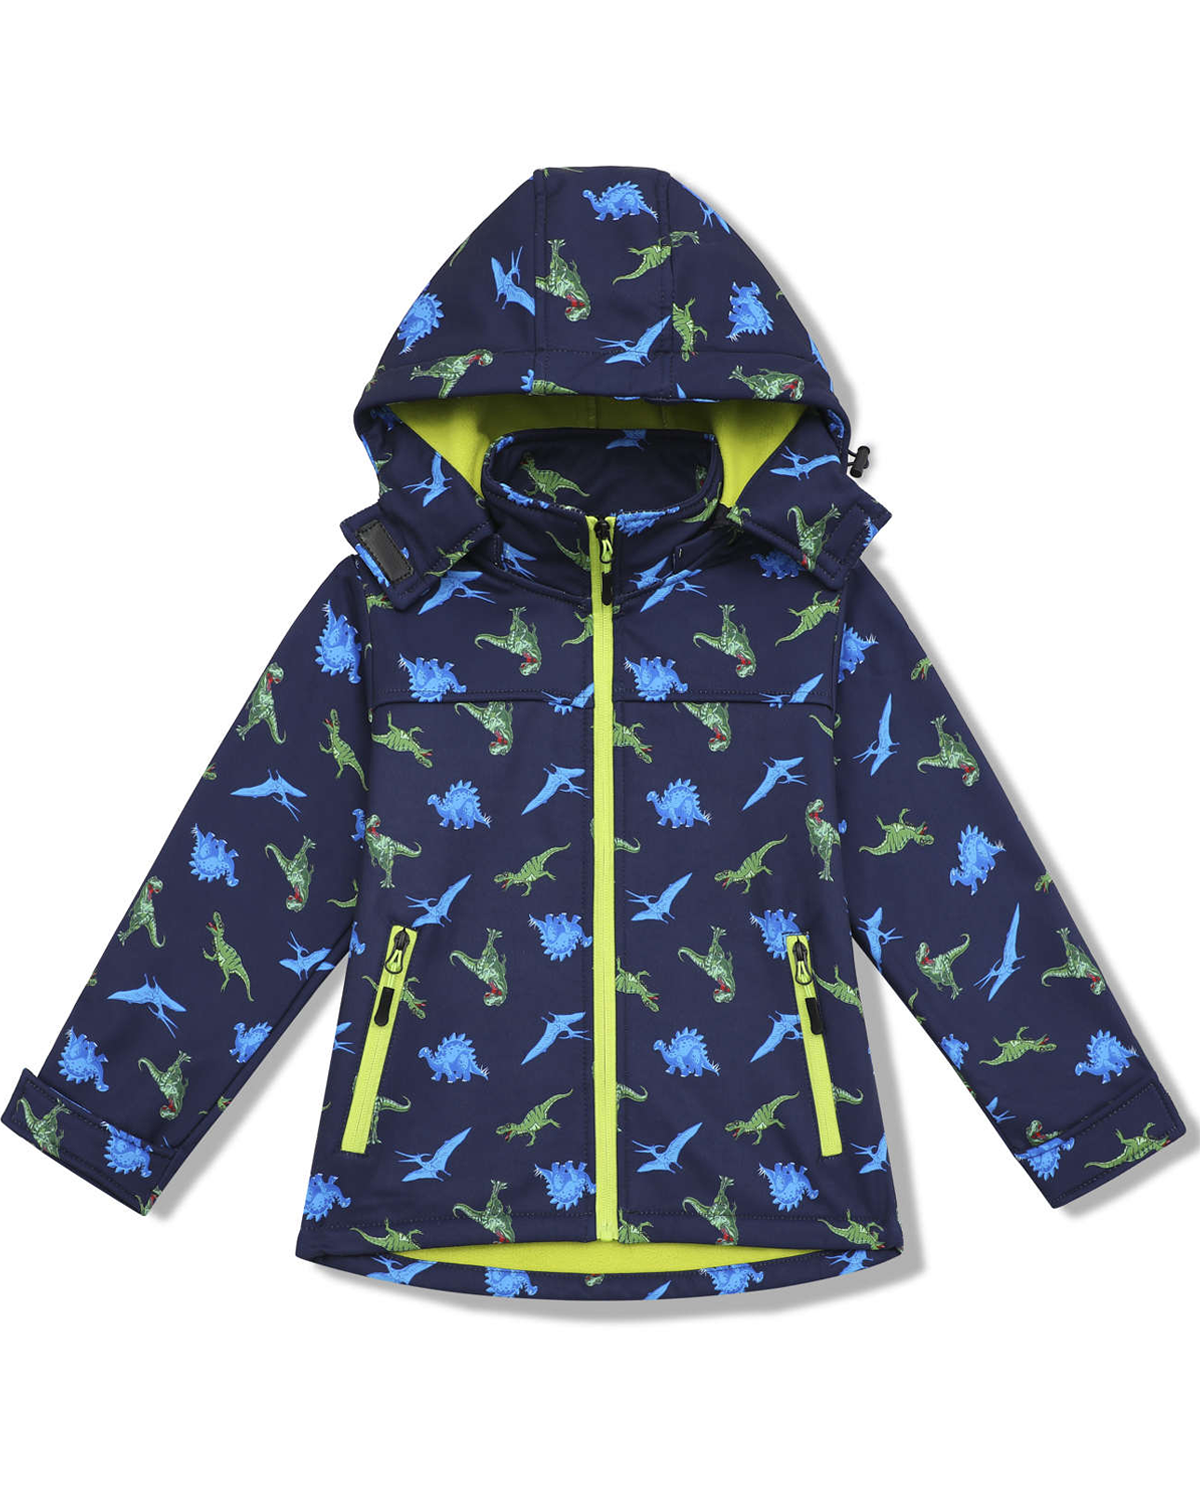 Chlapecká softshellová bunda, zateplená - KUGO HB8628, tmavě modrá Barva: Modrá tmavě, Velikost: 116